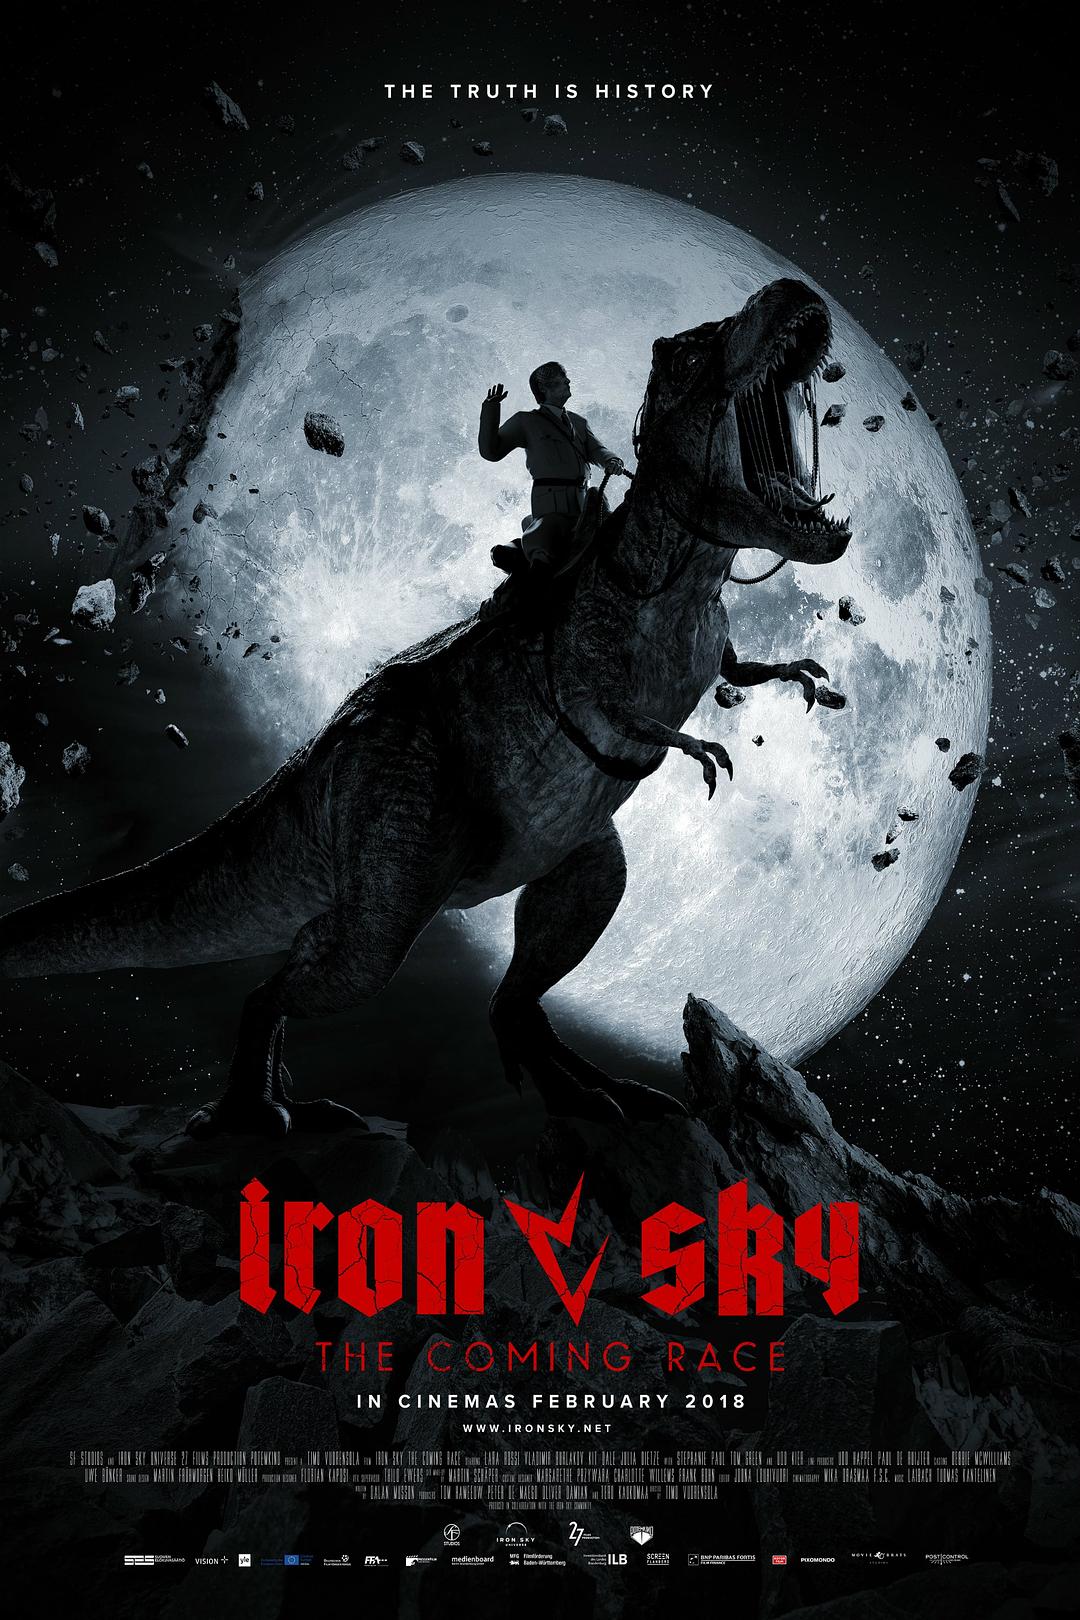 [钢铁苍穹2].Iron.Sky.The.Coming.Race.2019.FRA.BluRay.1080p.AVC.DTS-HD.MA.5.1-DiY@HDHome    37.82G-3.jpg